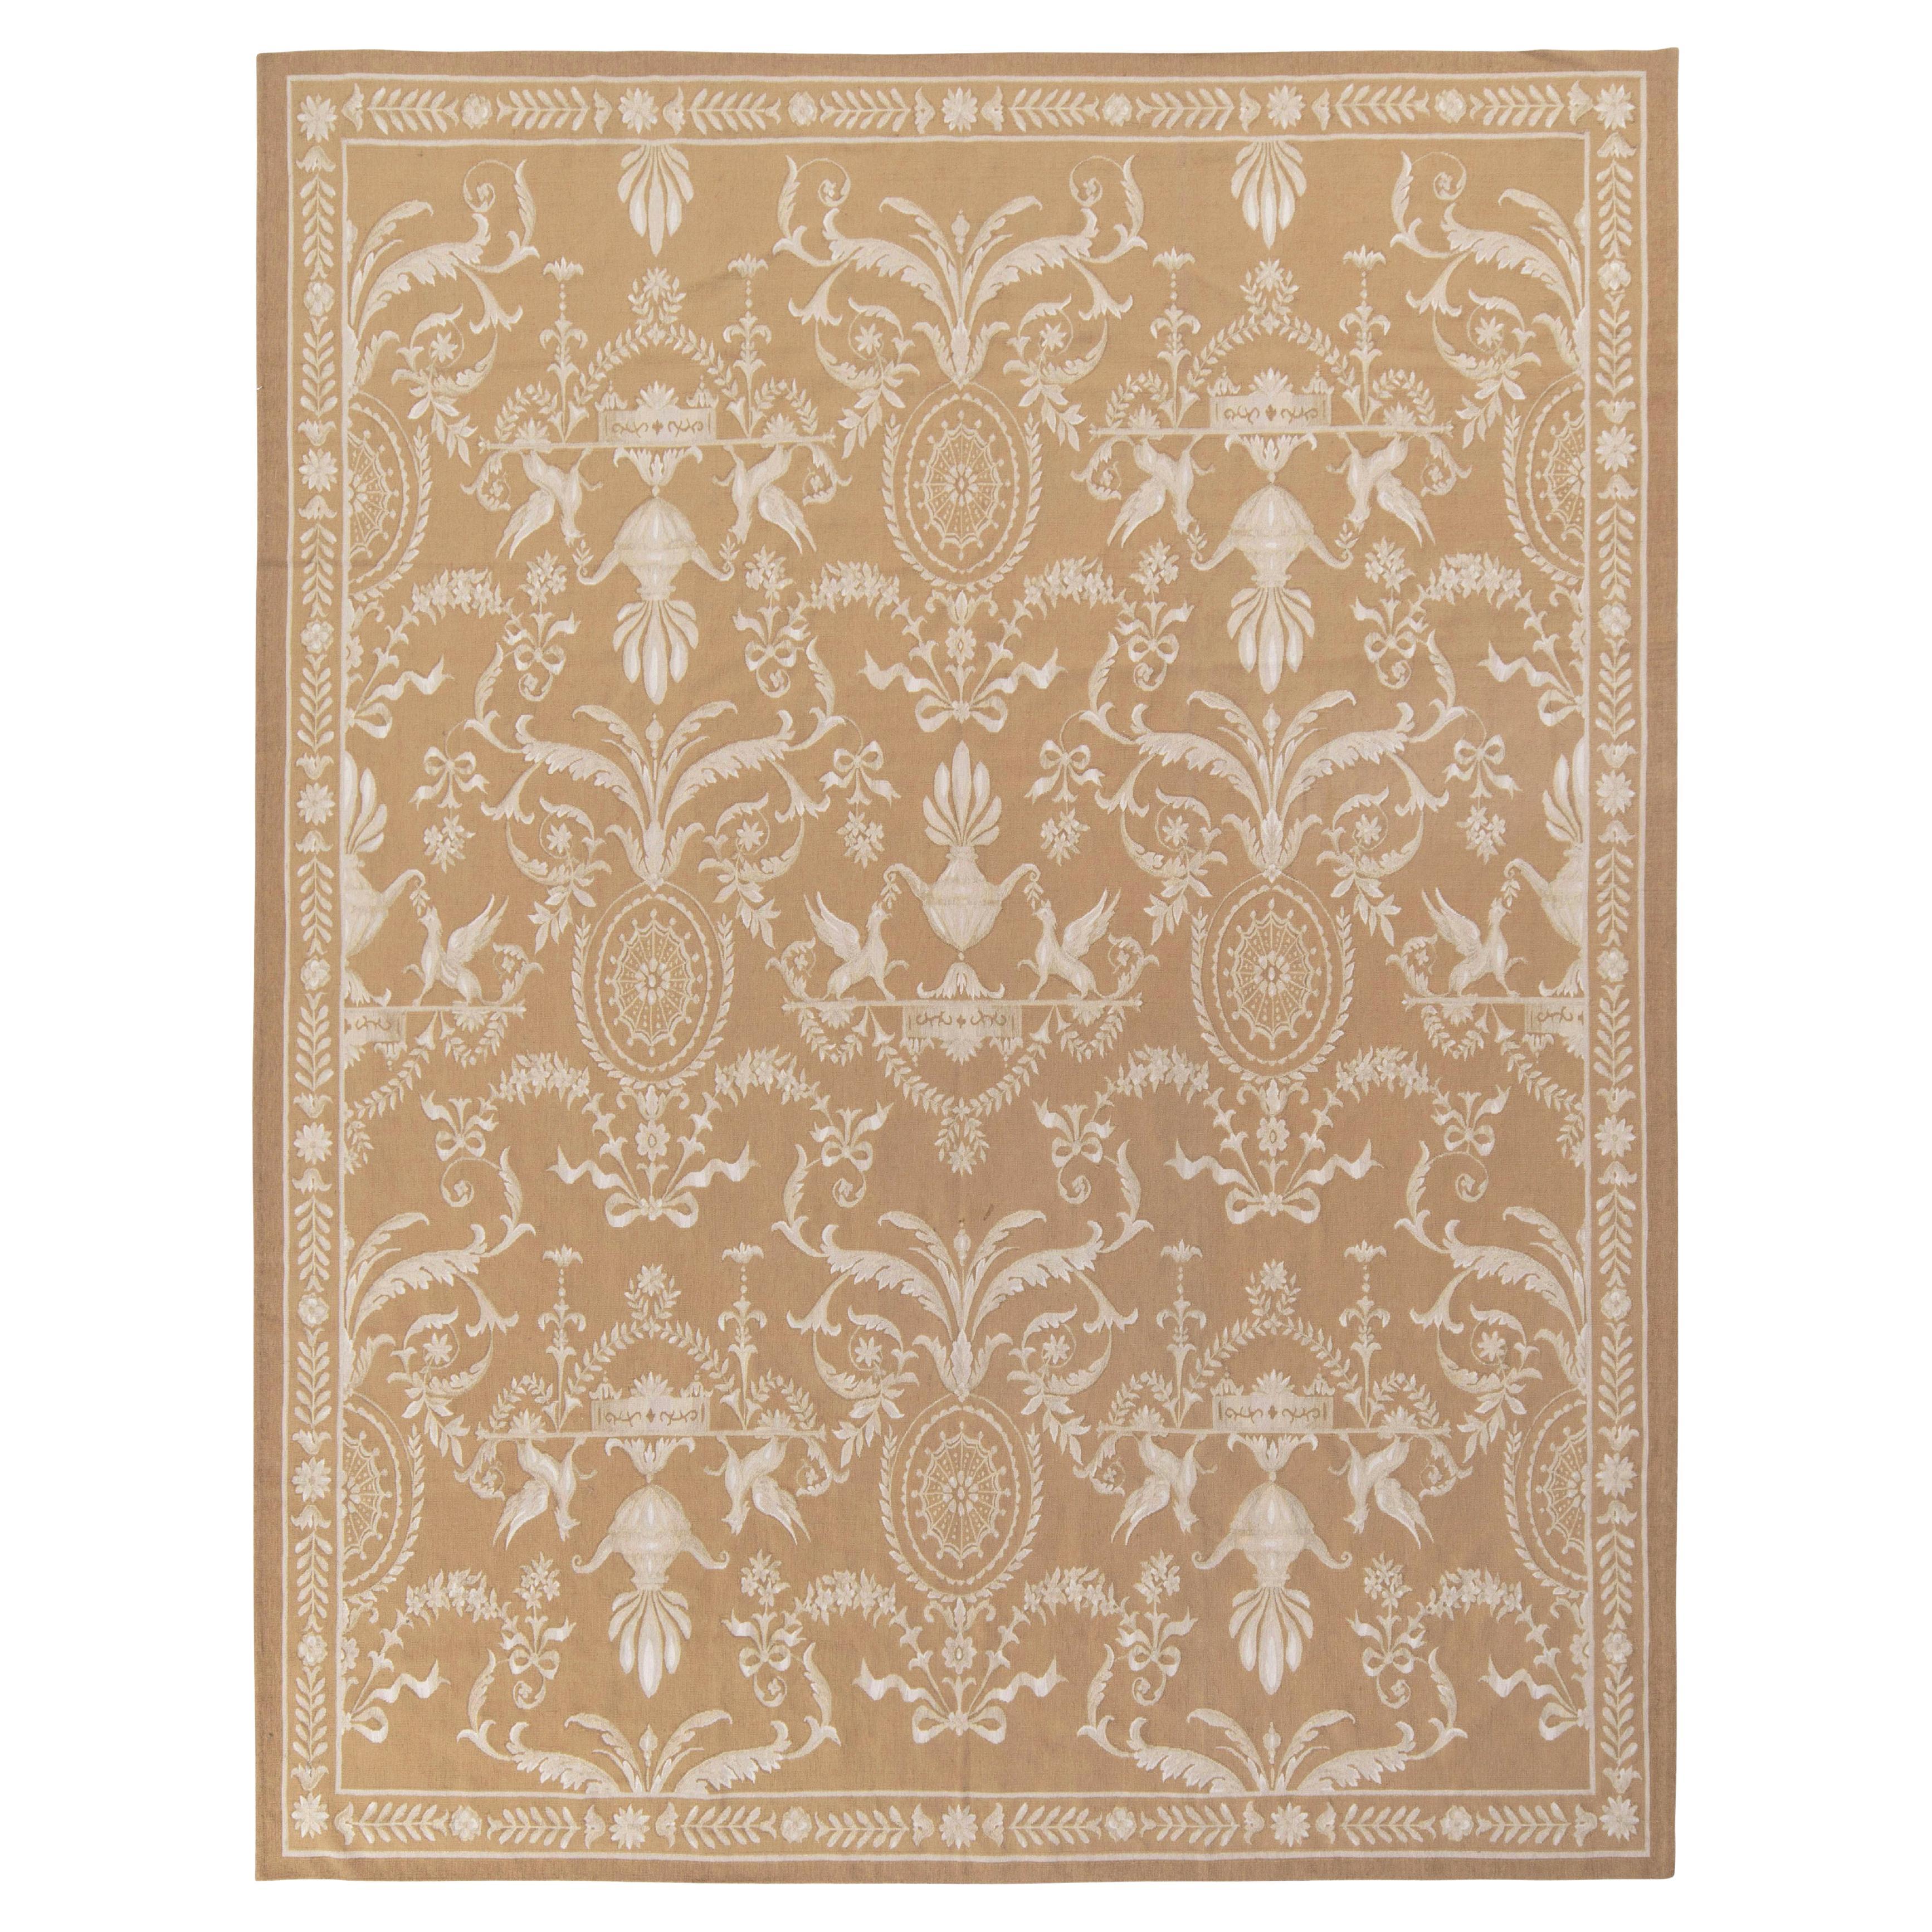 Tapis et tissage plat de style Kilims Aubusson en brun beige et blanc à motifs floraux